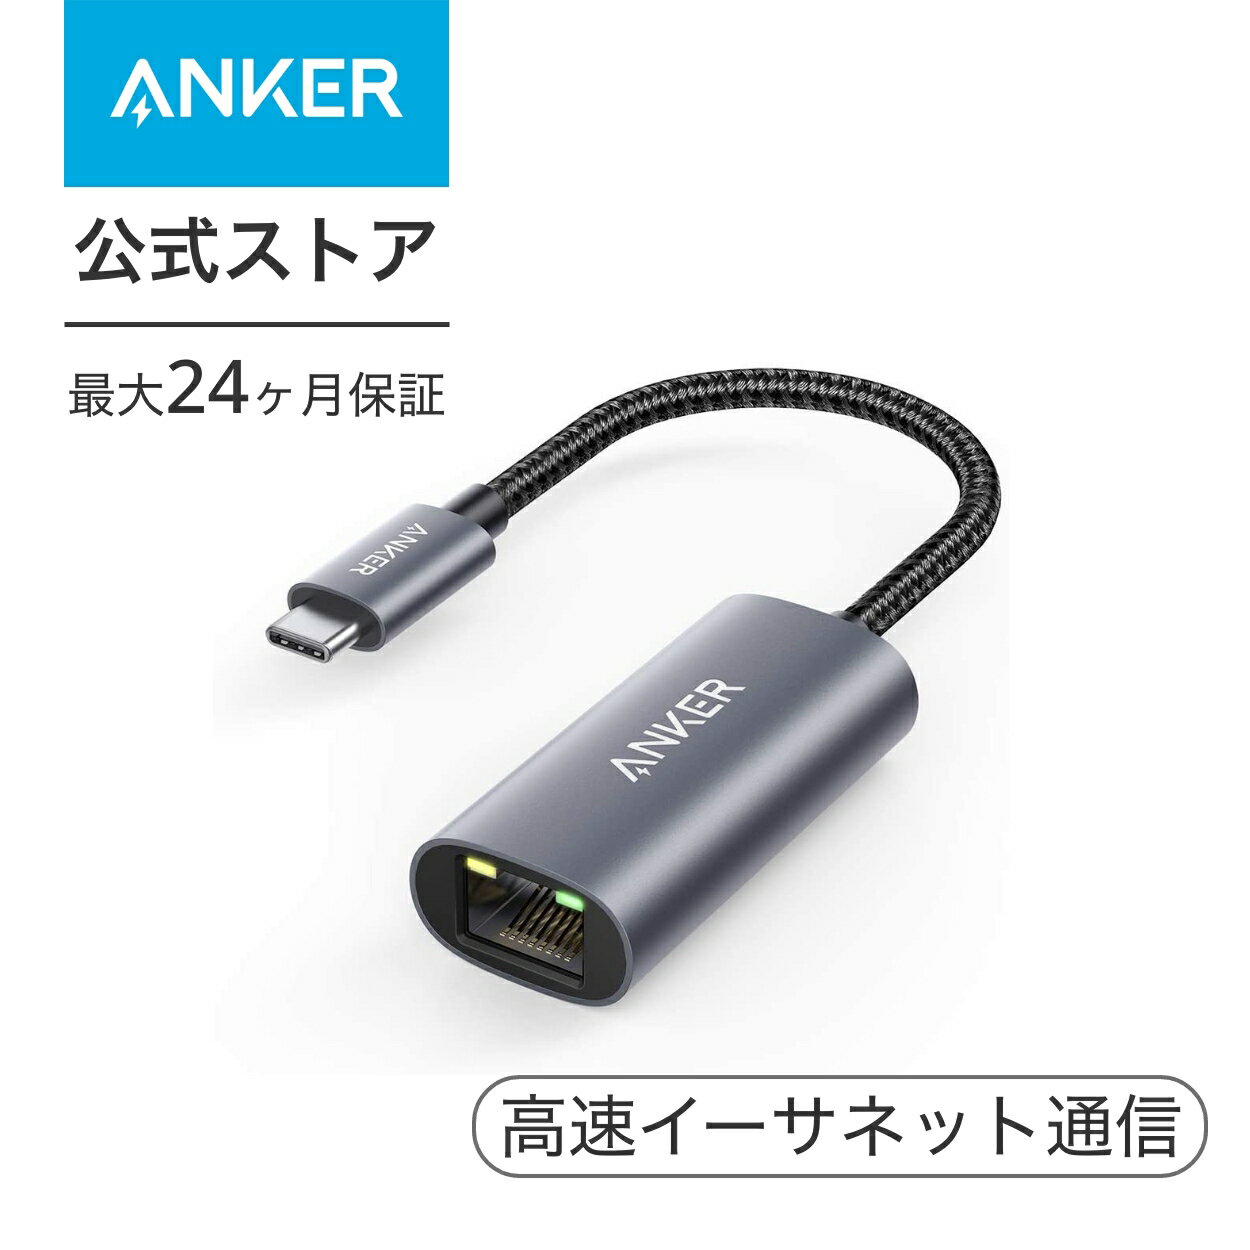 【あす楽対応】Anker PowerExpand USB-C & イーサネットアダプタ 1Gbps 高速イーサネット通信 MacBook iPad Pro 用